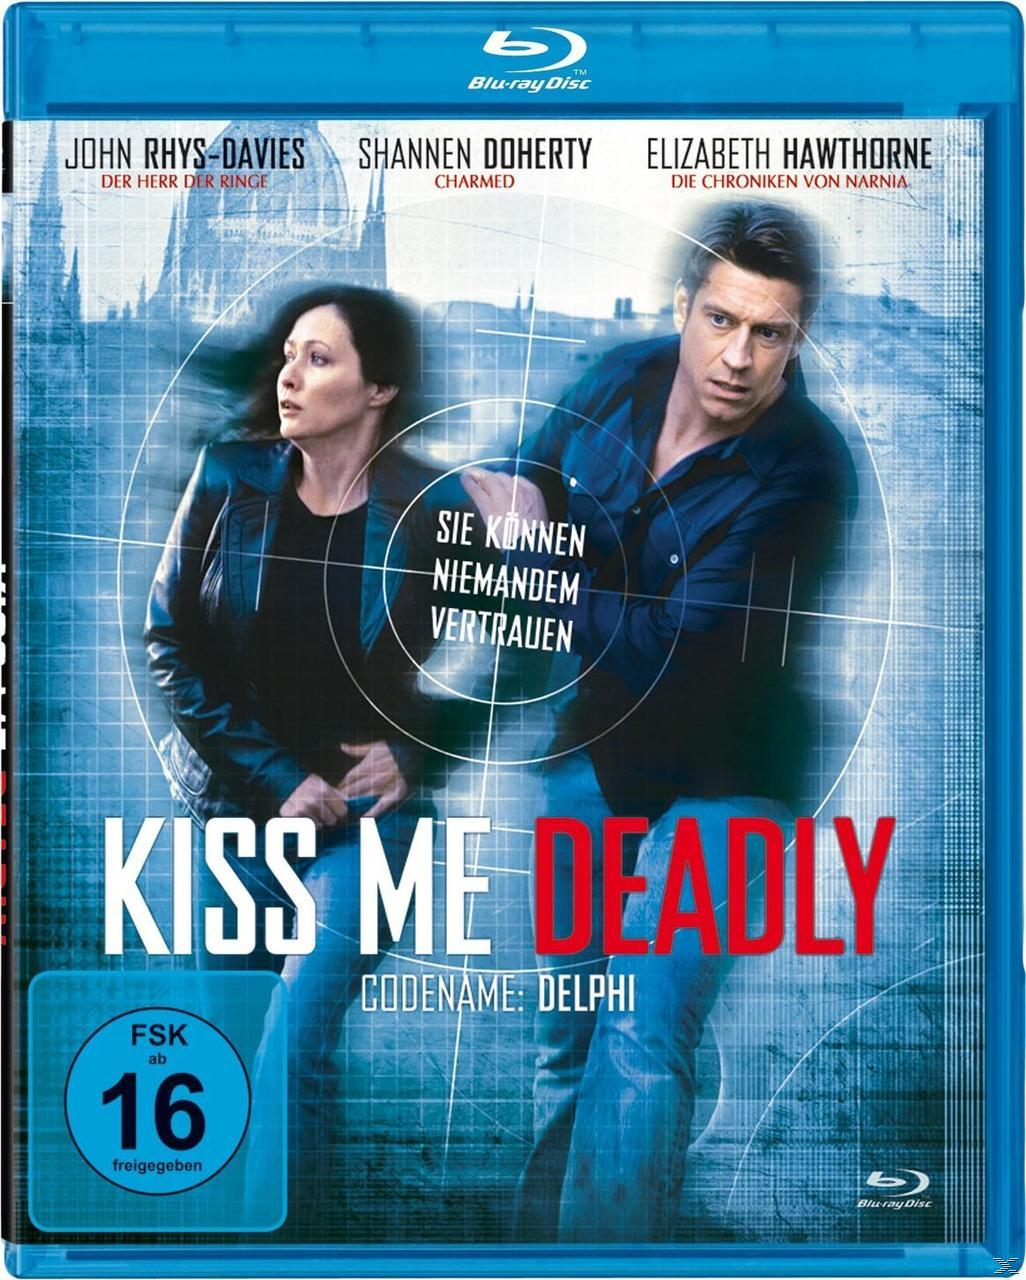 Kiss Me Deadly-Codename: Delphi Blu-ray